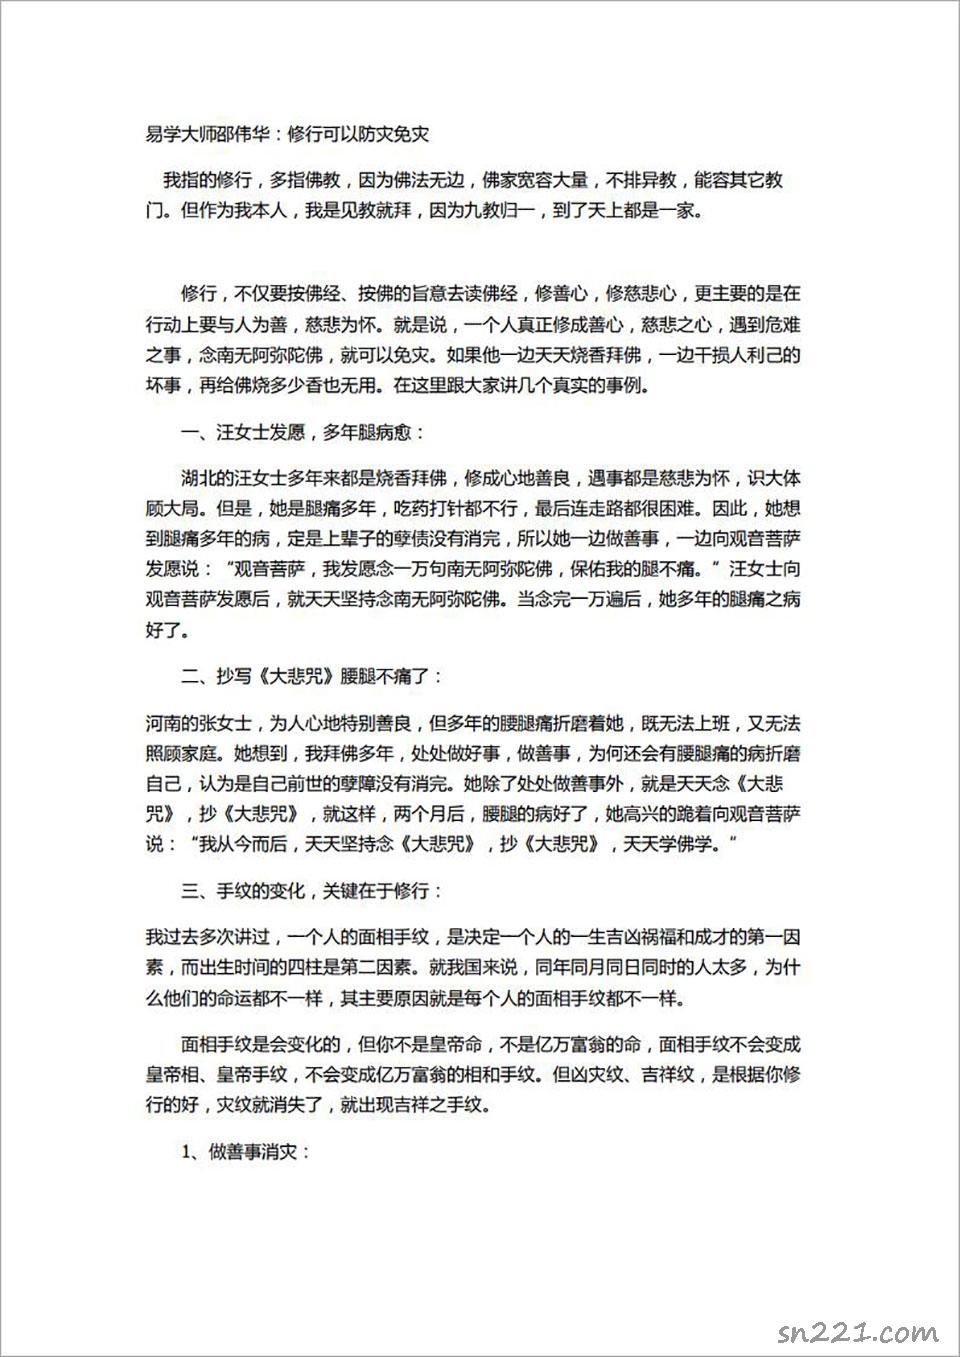 邵偉華-修行可以防災免災8頁.pdf